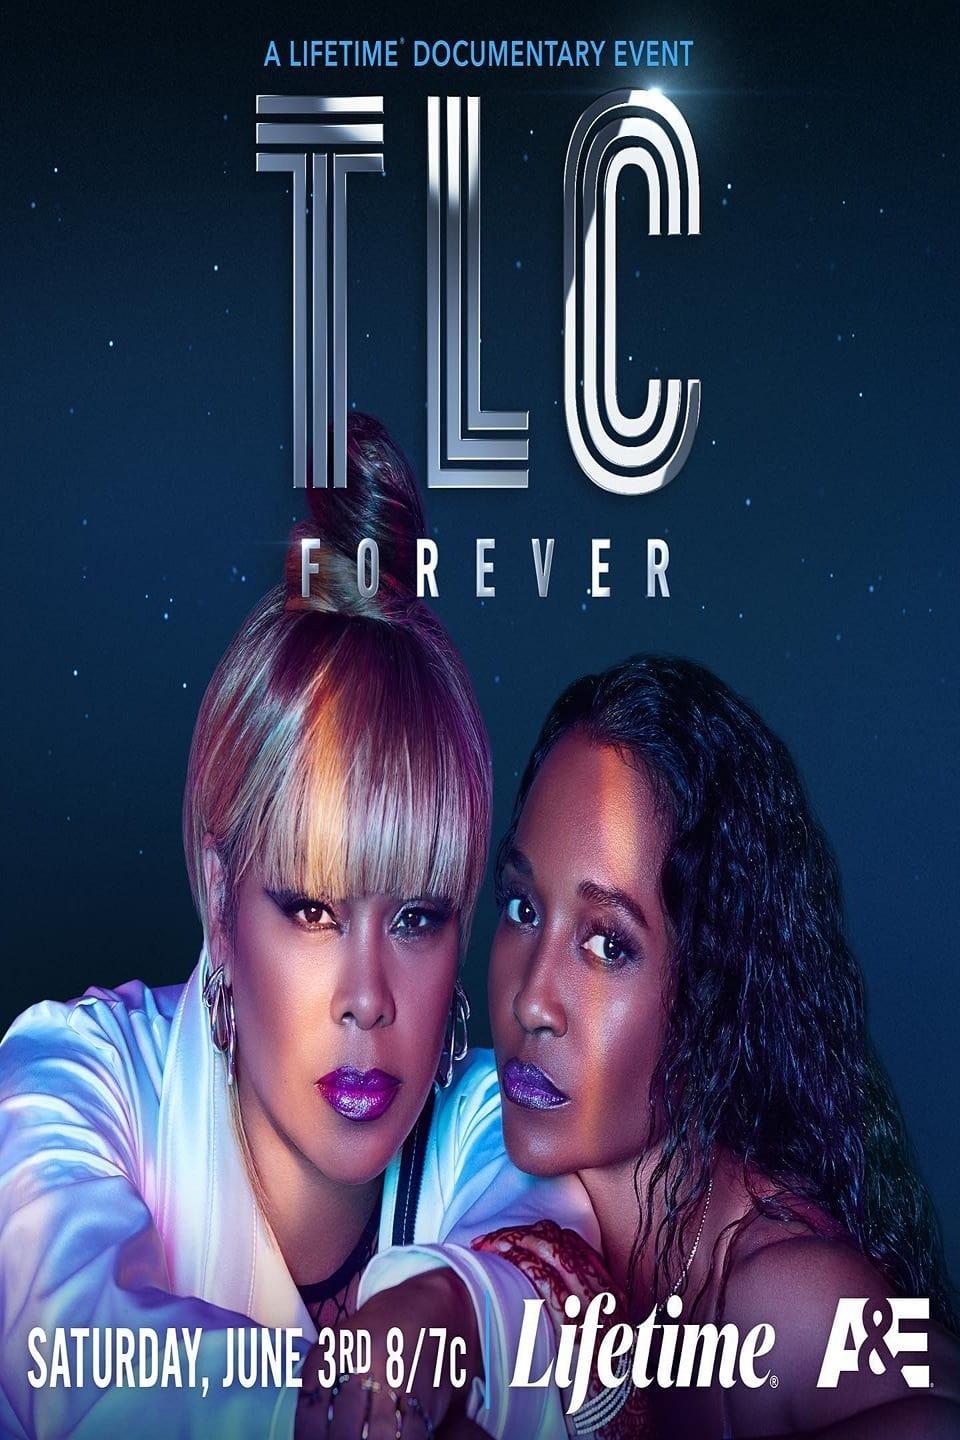 TLC Forever poster